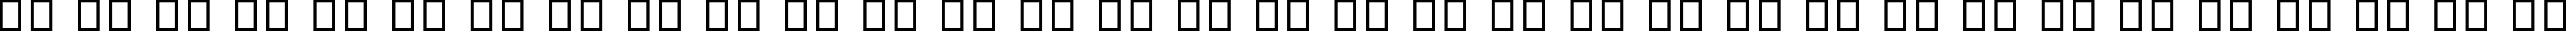 Пример написания русского алфавита шрифтом British Outline Majuscules